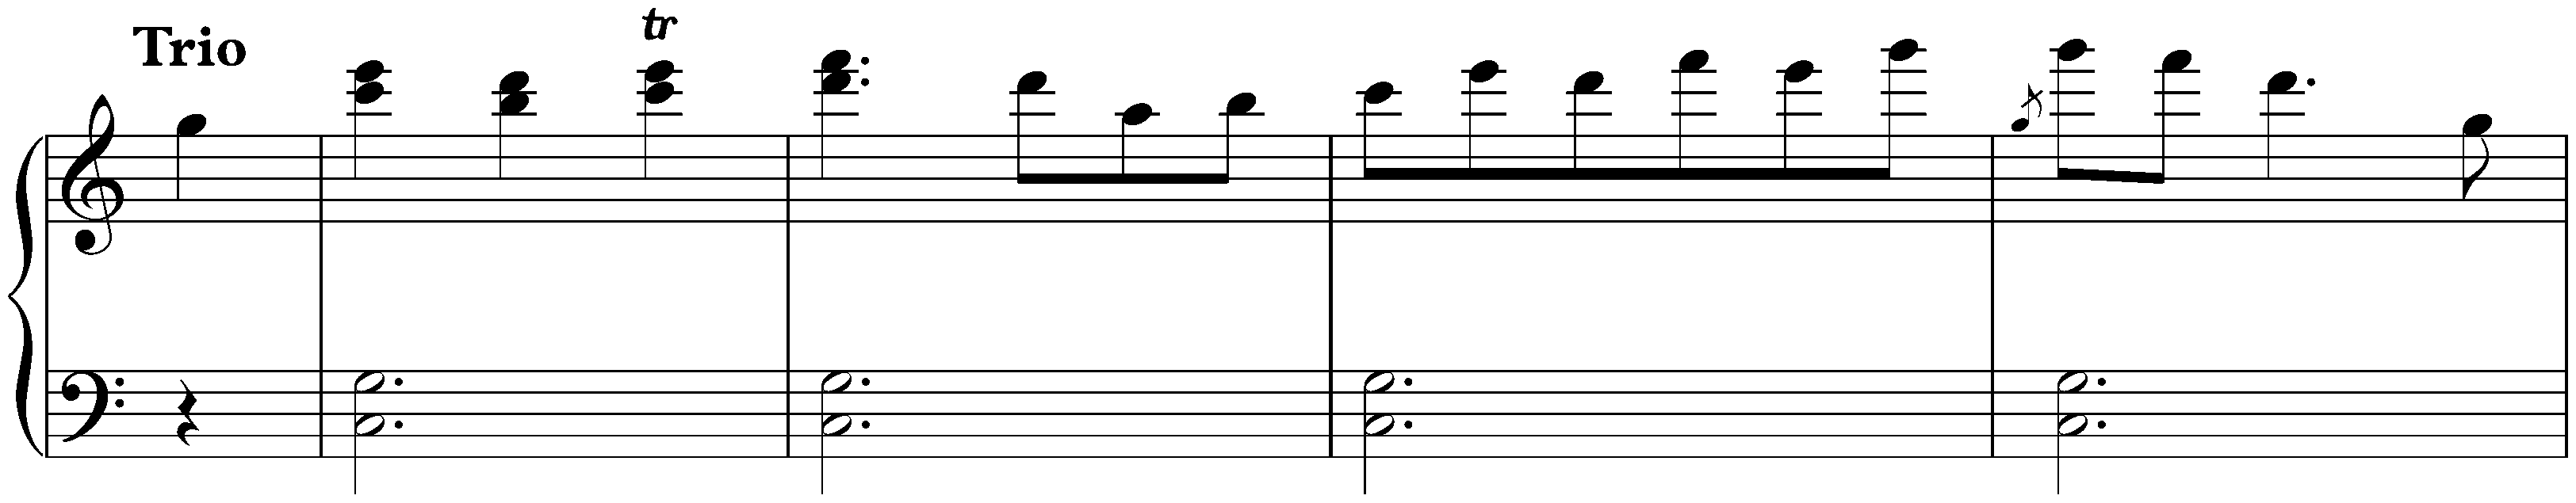 Minuet in C major, WoO 218